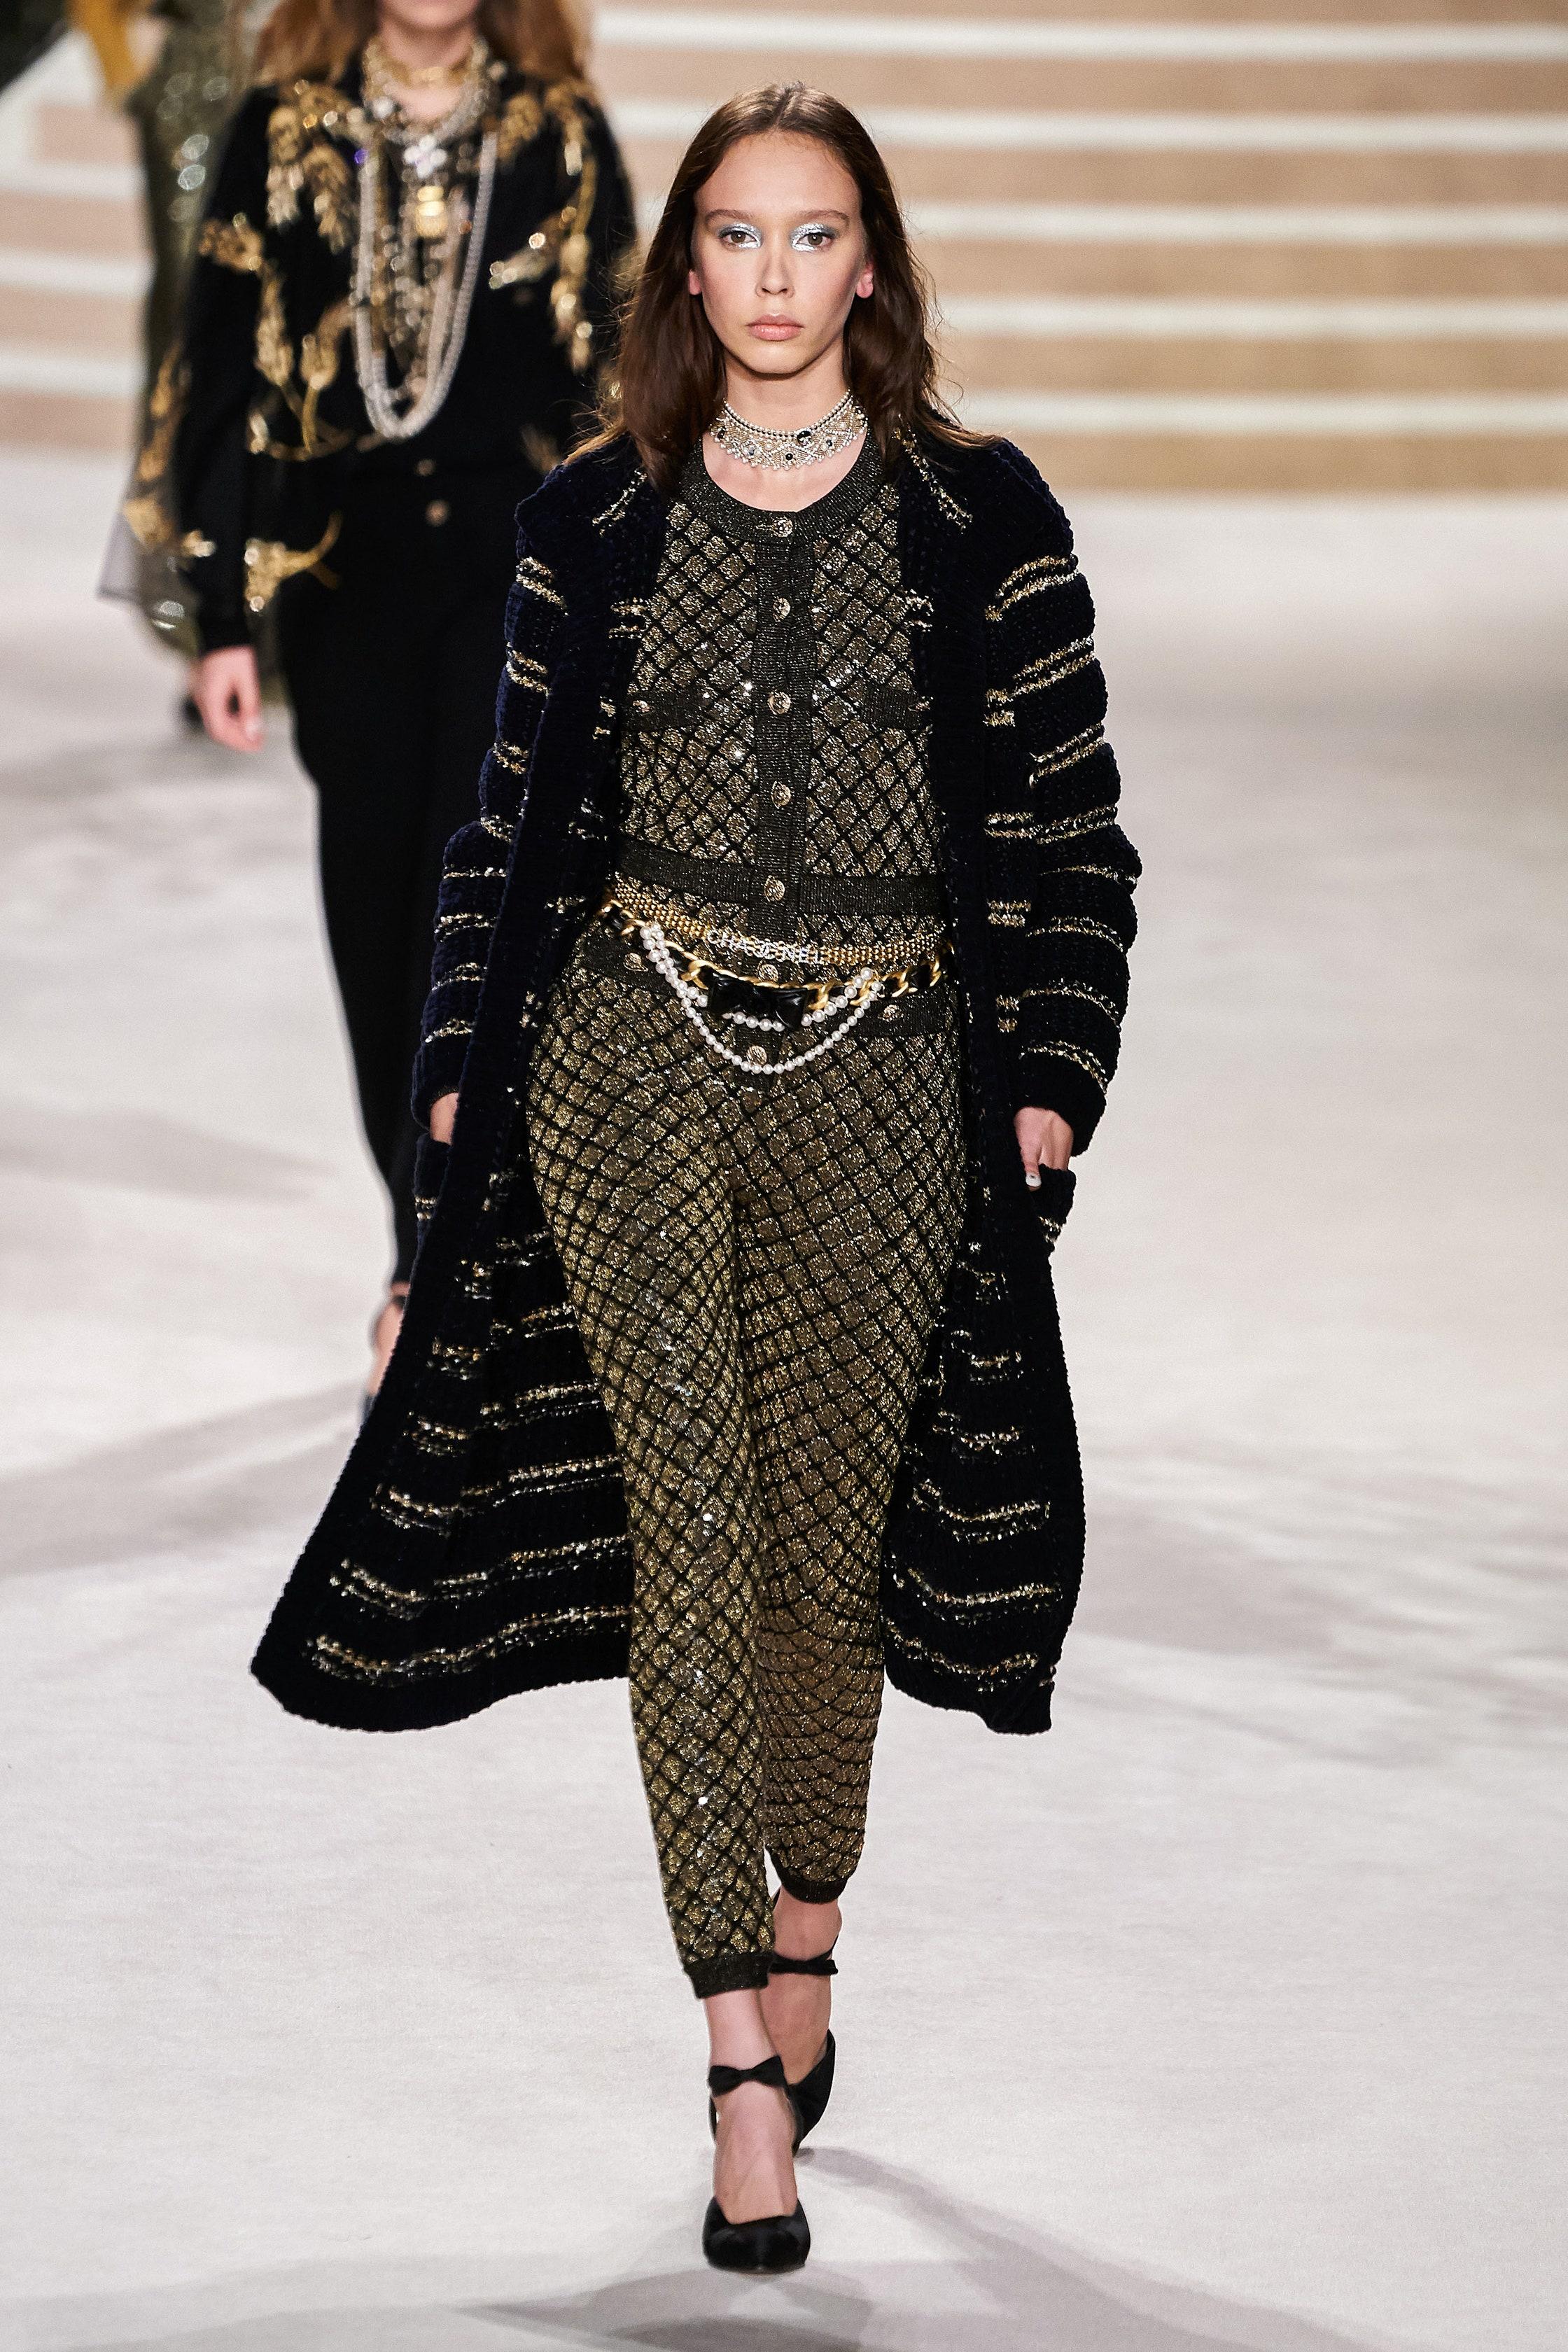 Nouveau manteau décontracté en velours de Chanel avec ceinture de la collection Runway of 31 Rue Cambon, 2020 Pre-Fall Metiers d'Art, 20A.
- en tricot lisse et velouté, d'un bleu profond étonnant (presque noir)
- entrelacé de bandes métalliques
-